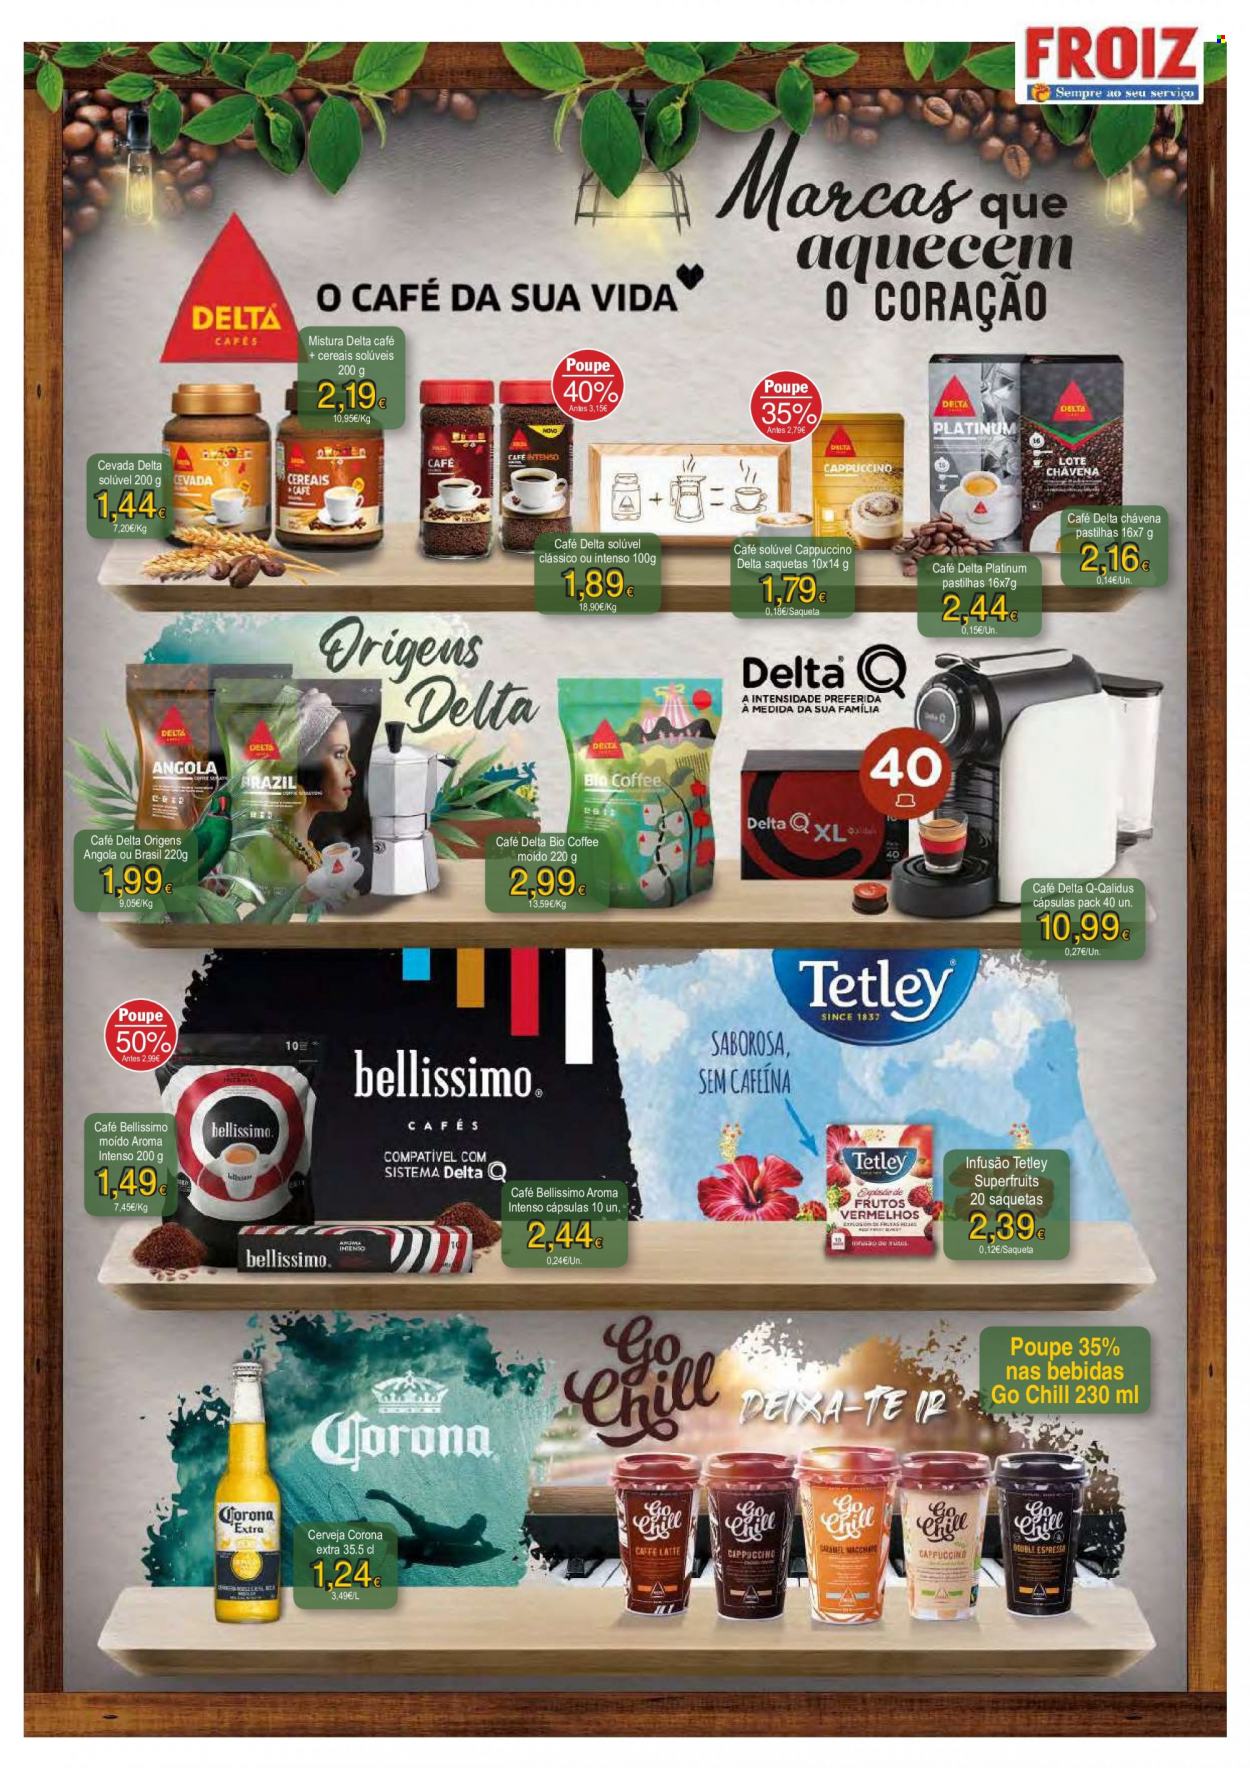 thumbnail - Folheto Froiz - 11.11.2021 - 24.11.2021 - Produtos em promoção - Corona, cerveja, cereais, café, Delta Q, café solúvel, saqueta. Página 14.